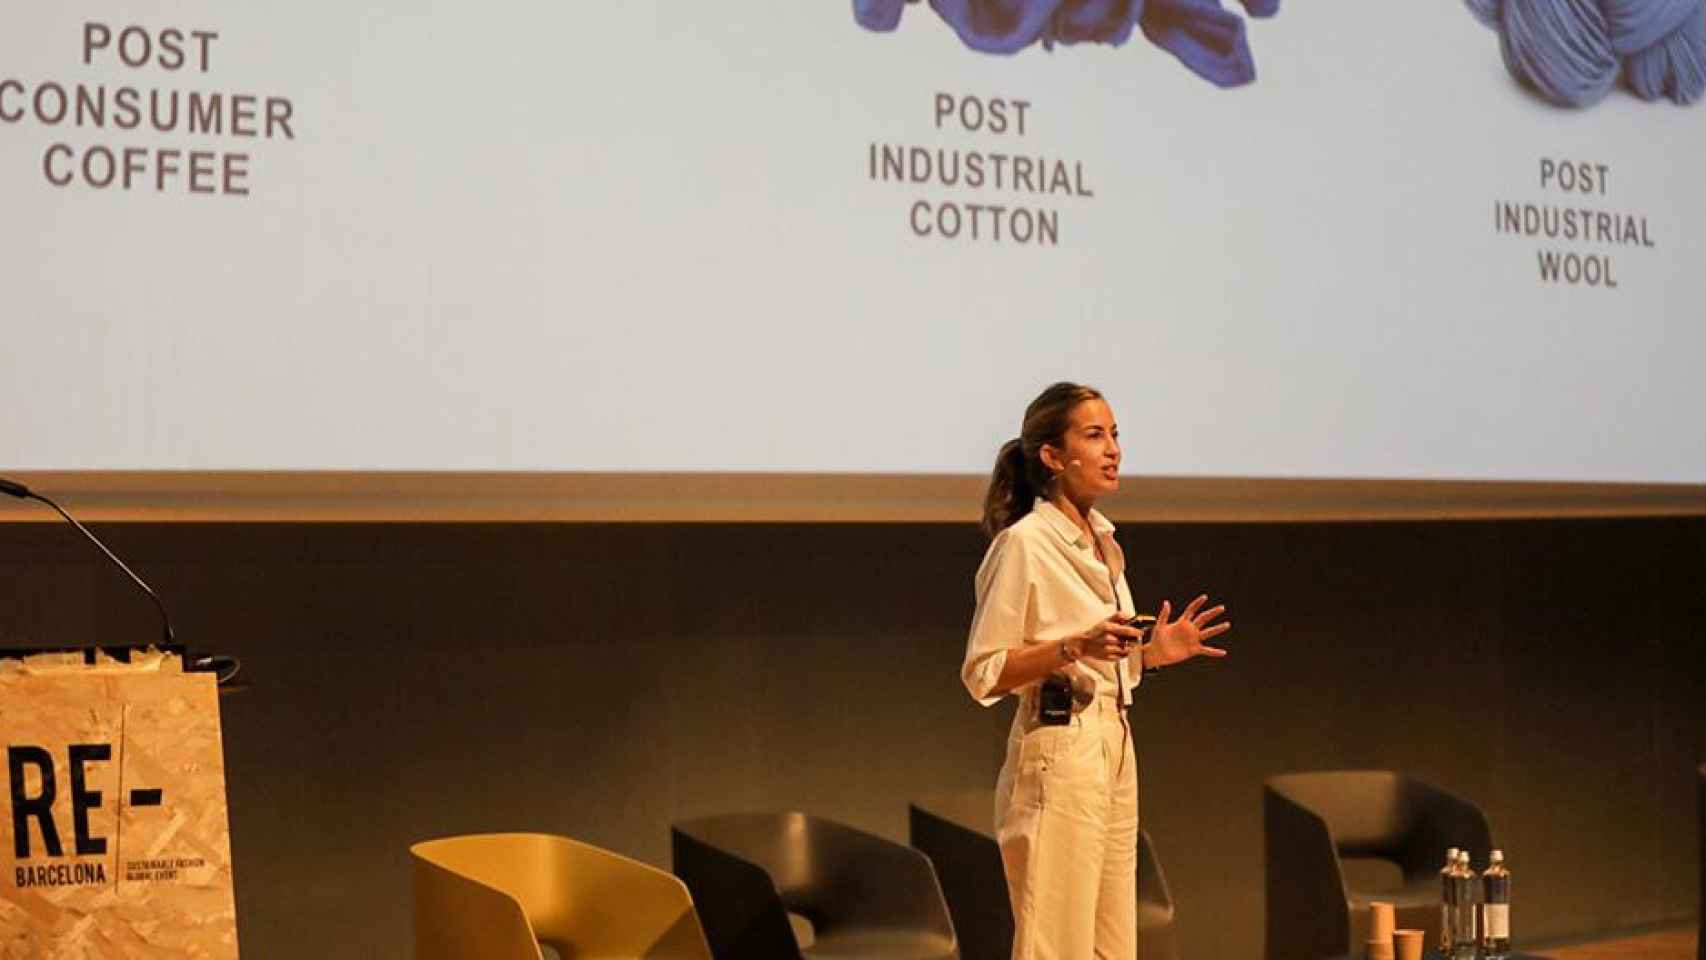 Carolina Álvarez (Ecoalf) imparte una conferencia en el Re-Barcelona, foro de moda sostenible / RE-BARCELONA